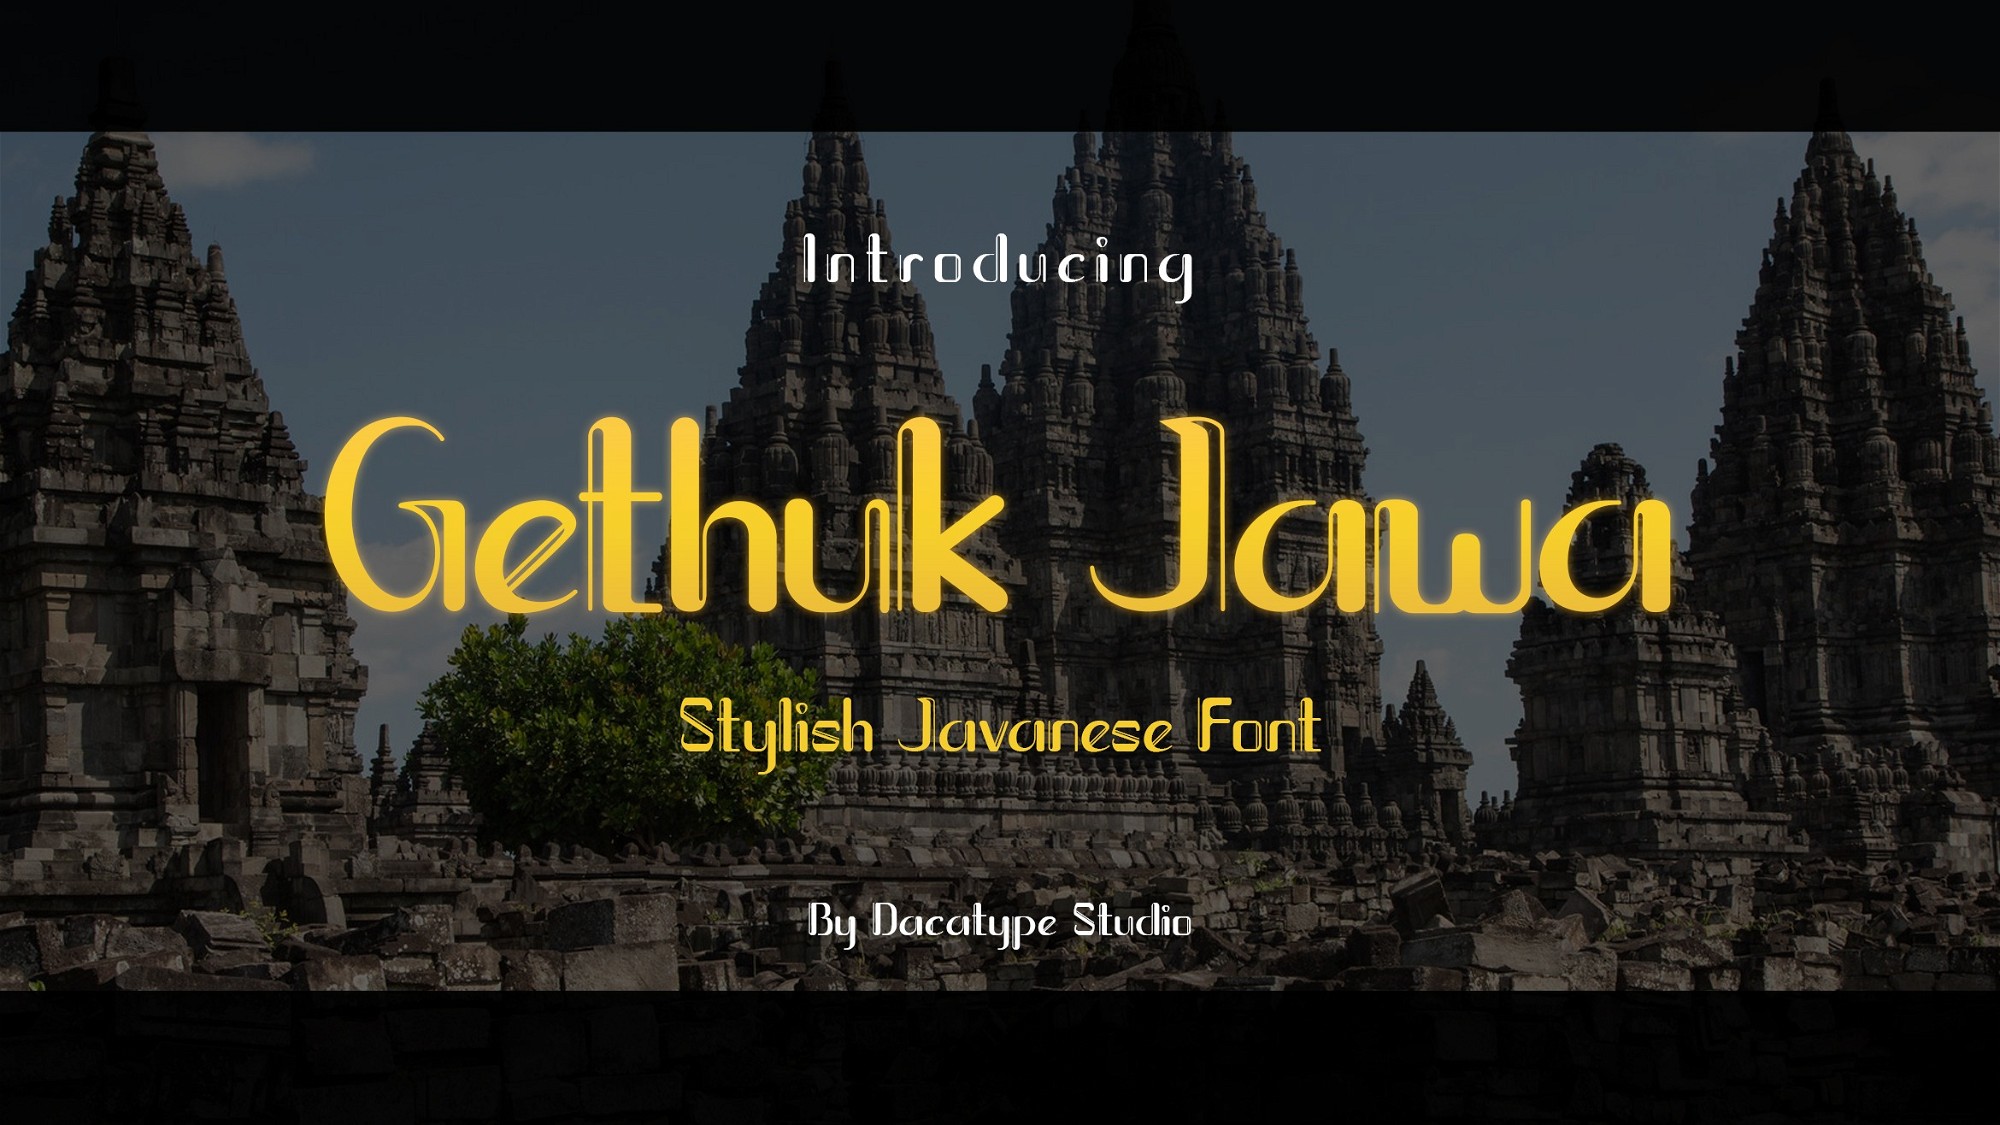 AppSumo Deal for Gethuk Jawa